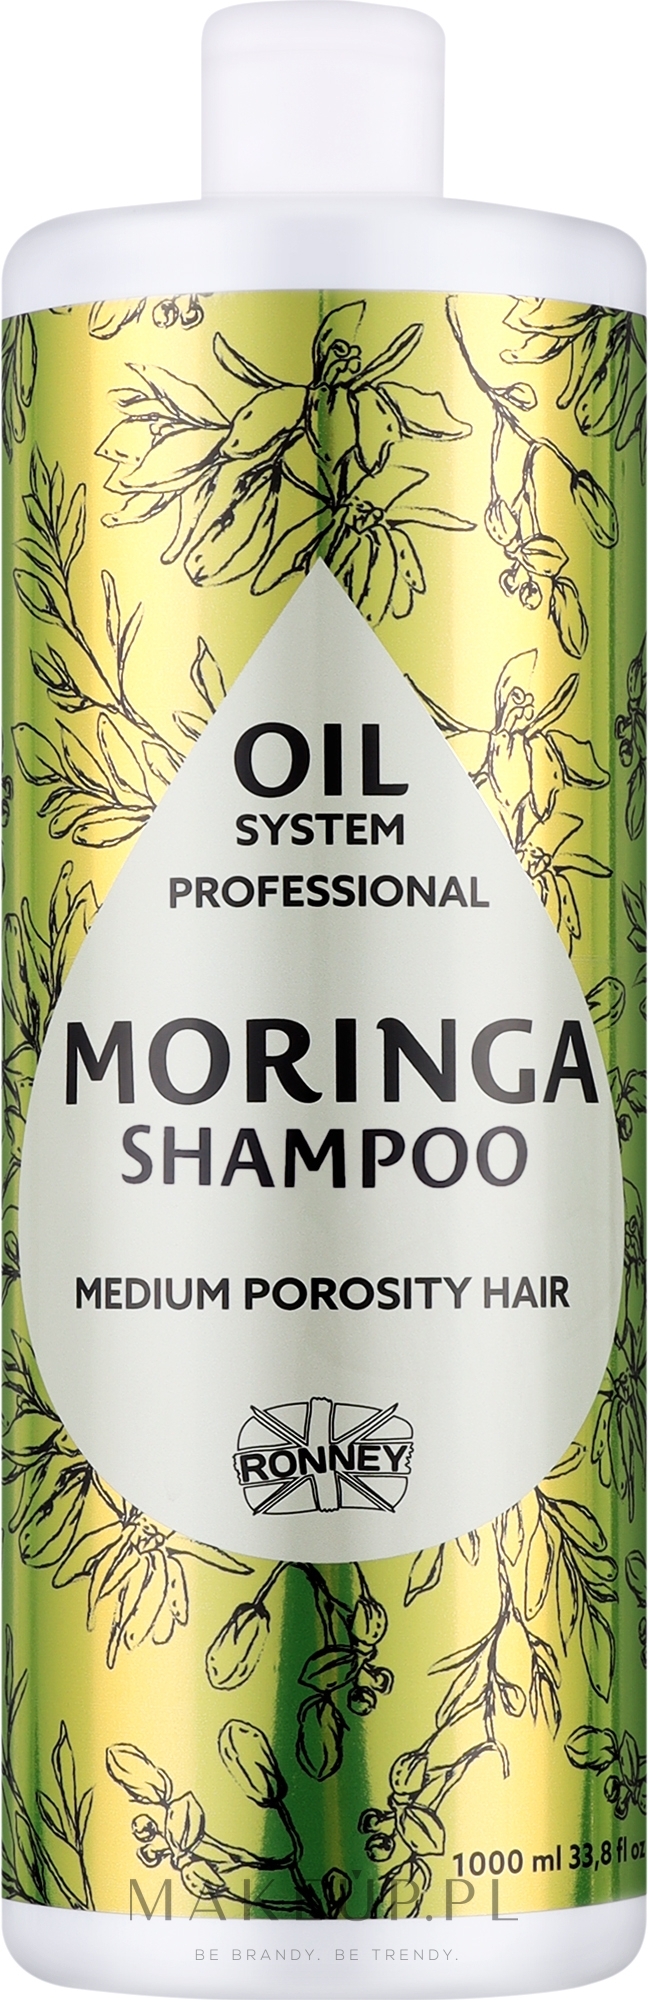 Szampon do włosów średnioporowatych z olejkiem moringa - Ronney Professional Oil System Medium Porosity Hair Moringa Shampoo — Zdjęcie 1000 ml